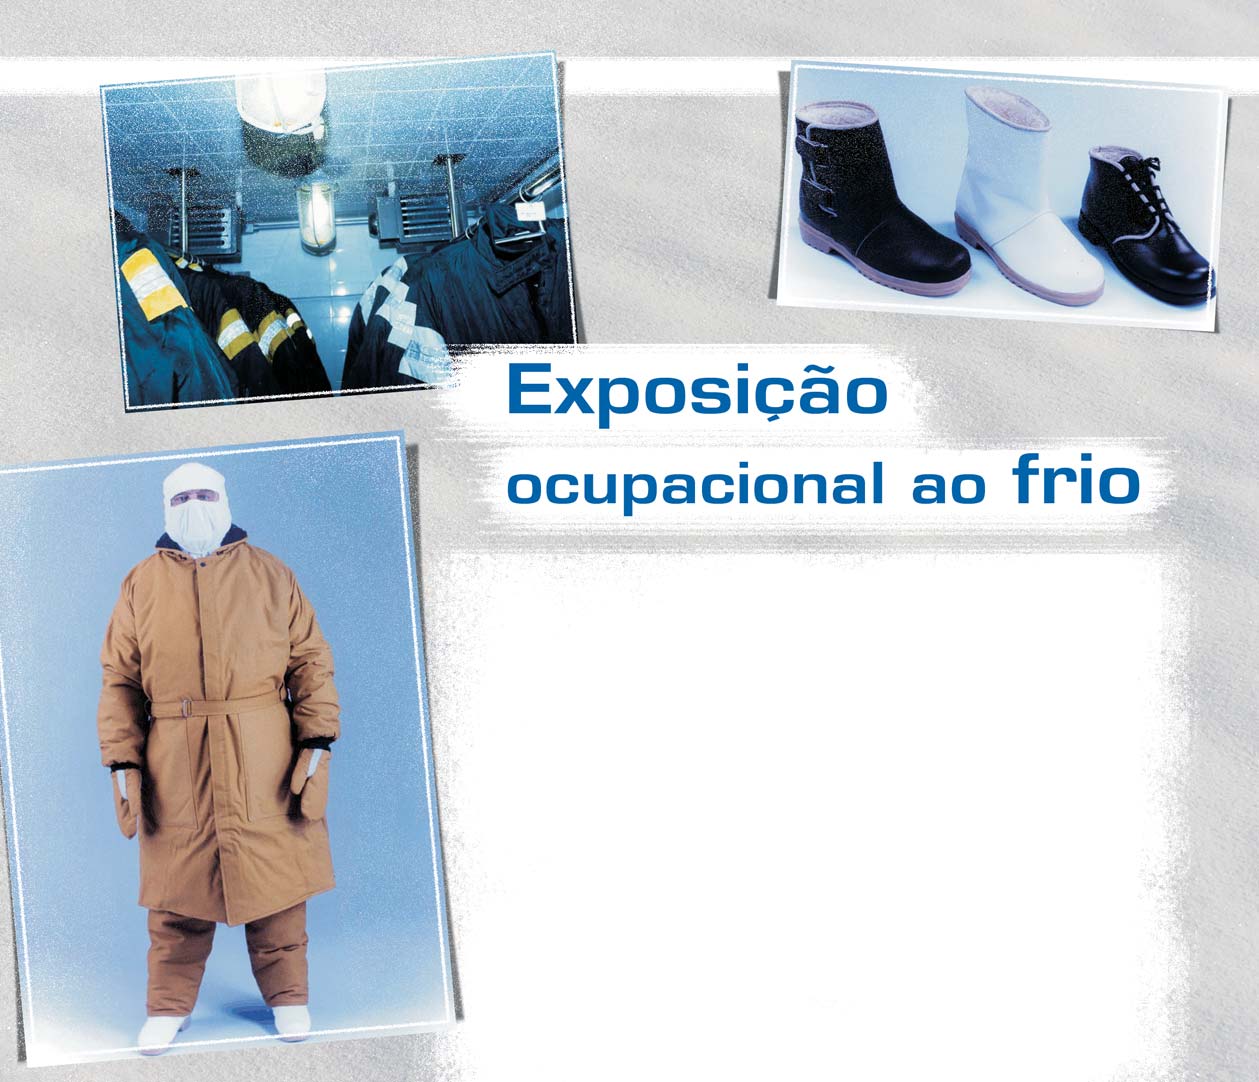 Fotos: Divulgação/autor por Marcos Paiva Matos* 1. Introdução Diversas atividades laborais expõem os trabalhadores aos danos causados pelo frio.